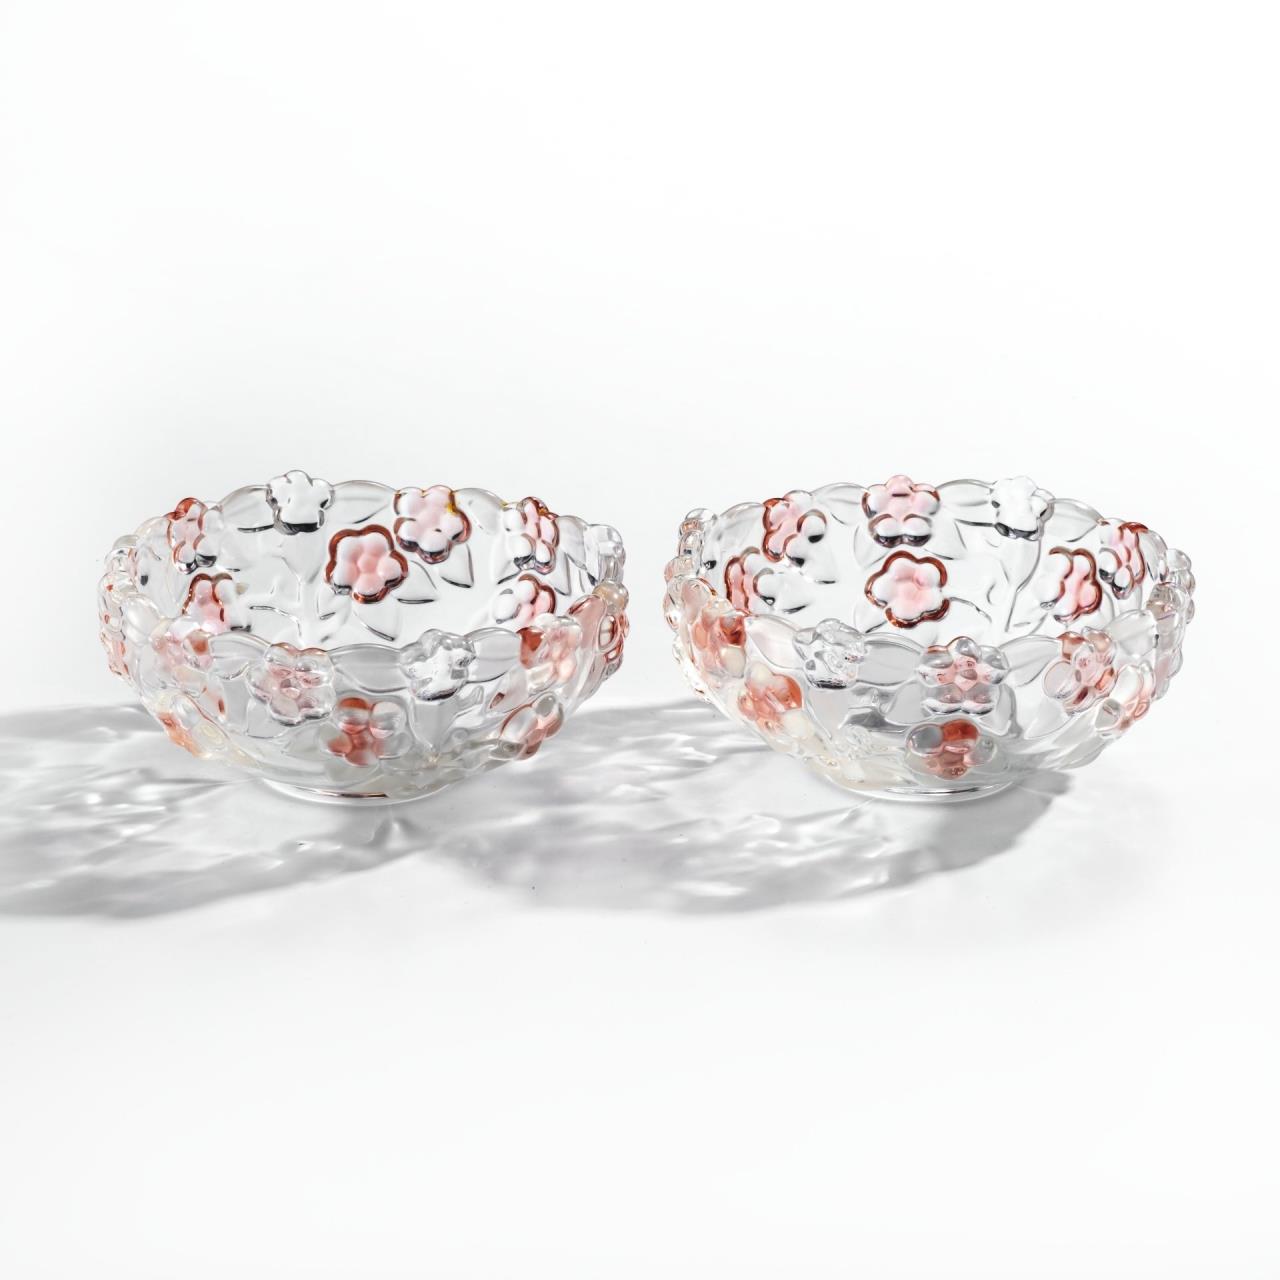 фото Набор из 2 конфетниц с цветочным декором и фигурным бортом, стекло, фирма "walther-glas" однажды